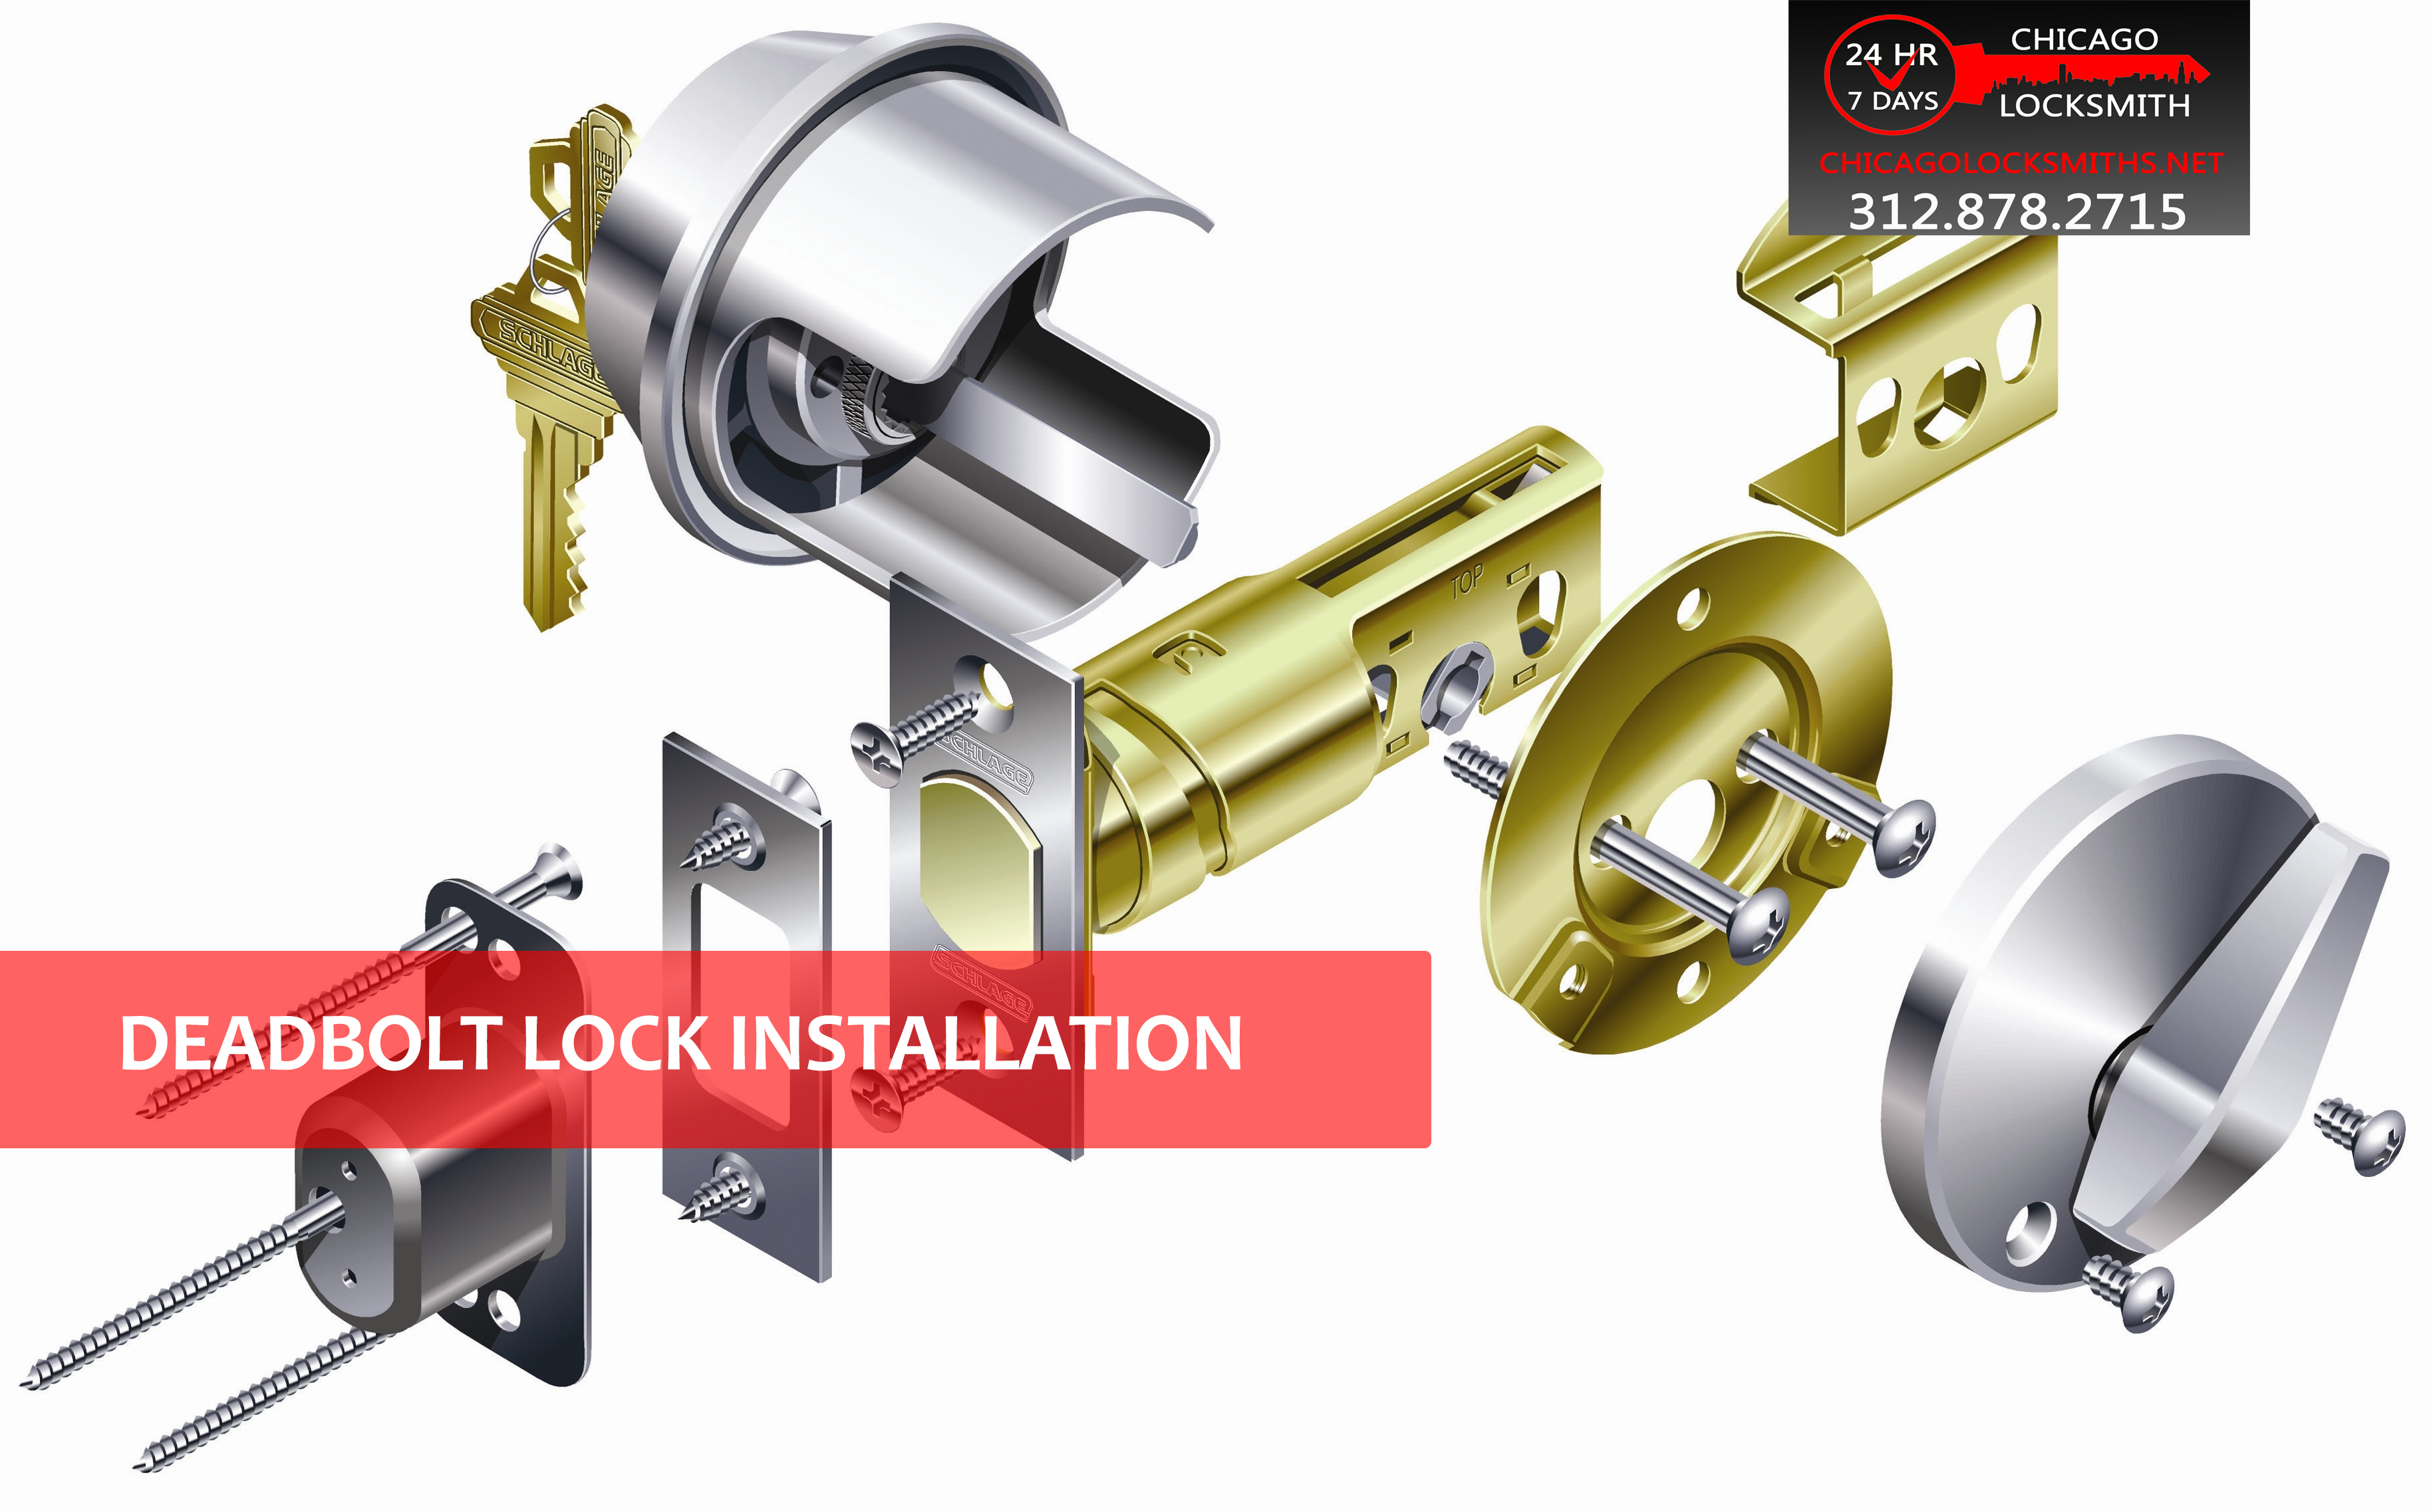 Installing a Deadbolt Lock - Chicago Locksmiths Blog